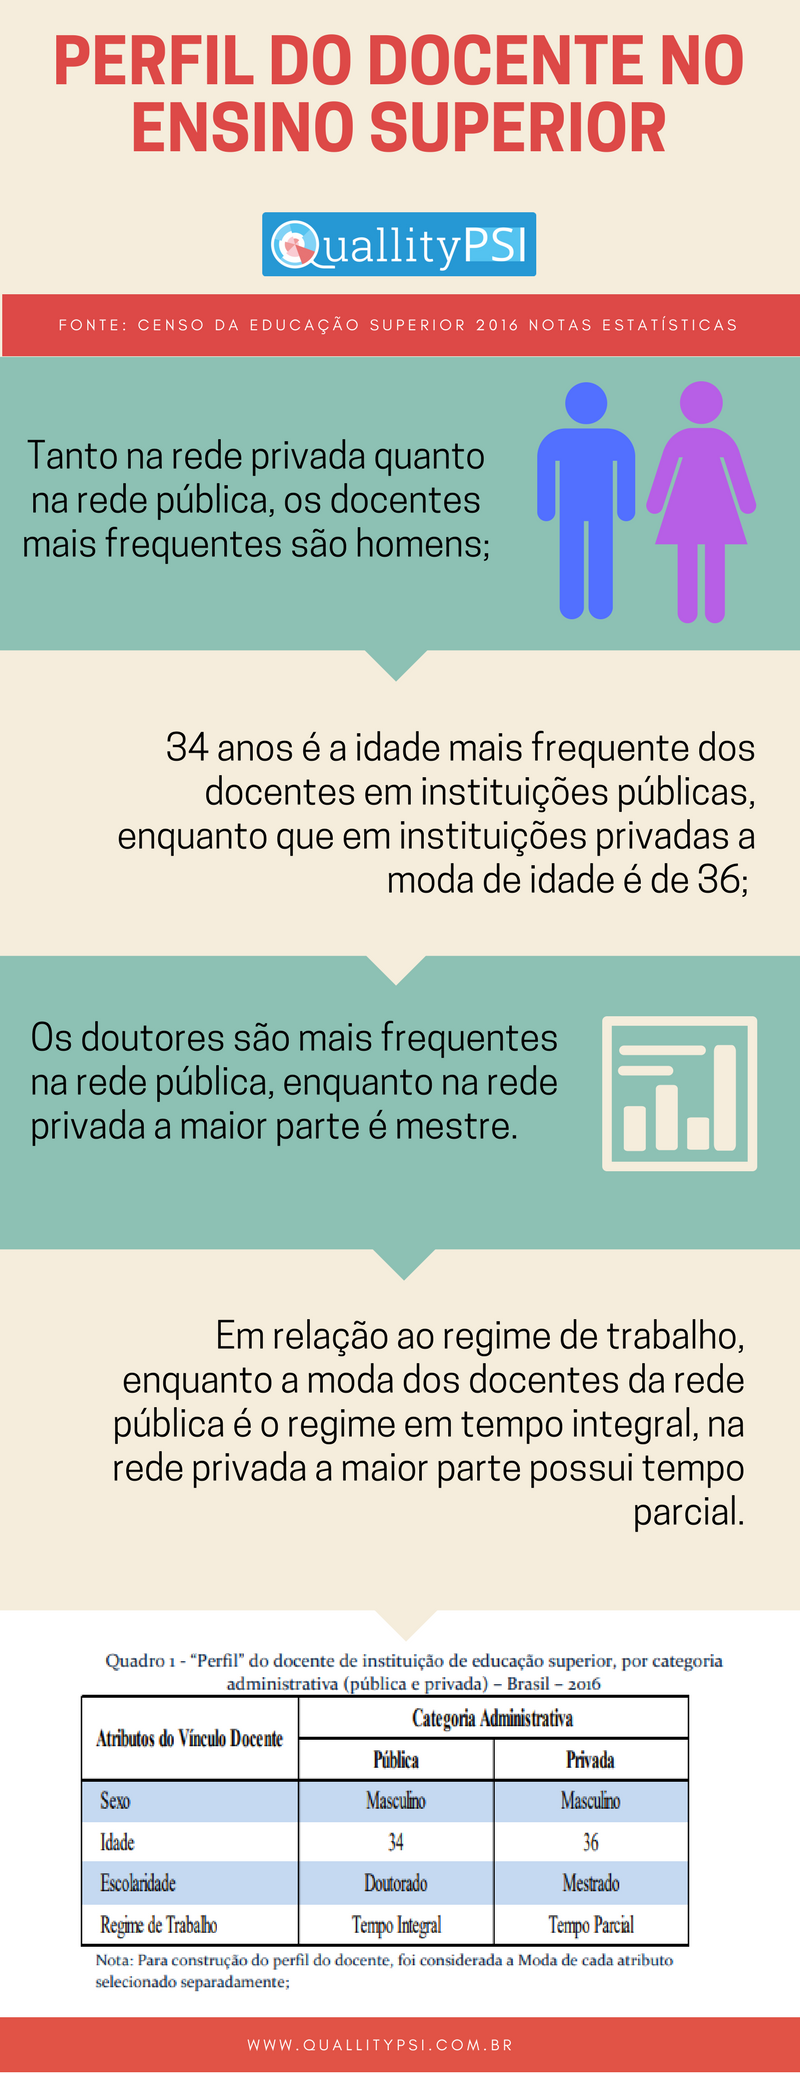 Perfil do docente no Ensino Superior no Brasil 